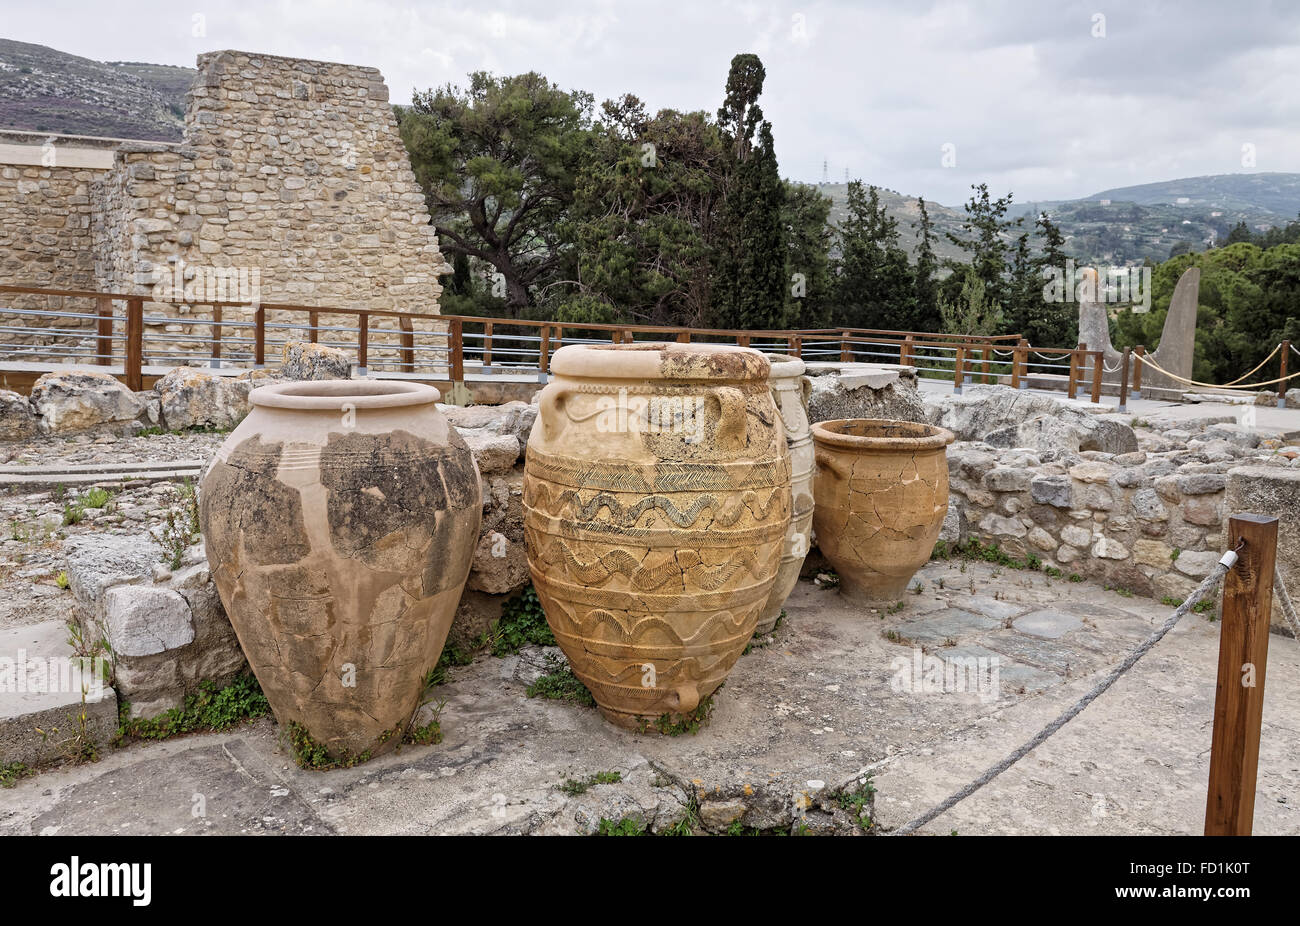 Pithoi, stockage ou pots Minoens, de Knossos Crète Grèce stocké à sec et humide consommables, tels que le vin, l'huile et de céréales. Banque D'Images